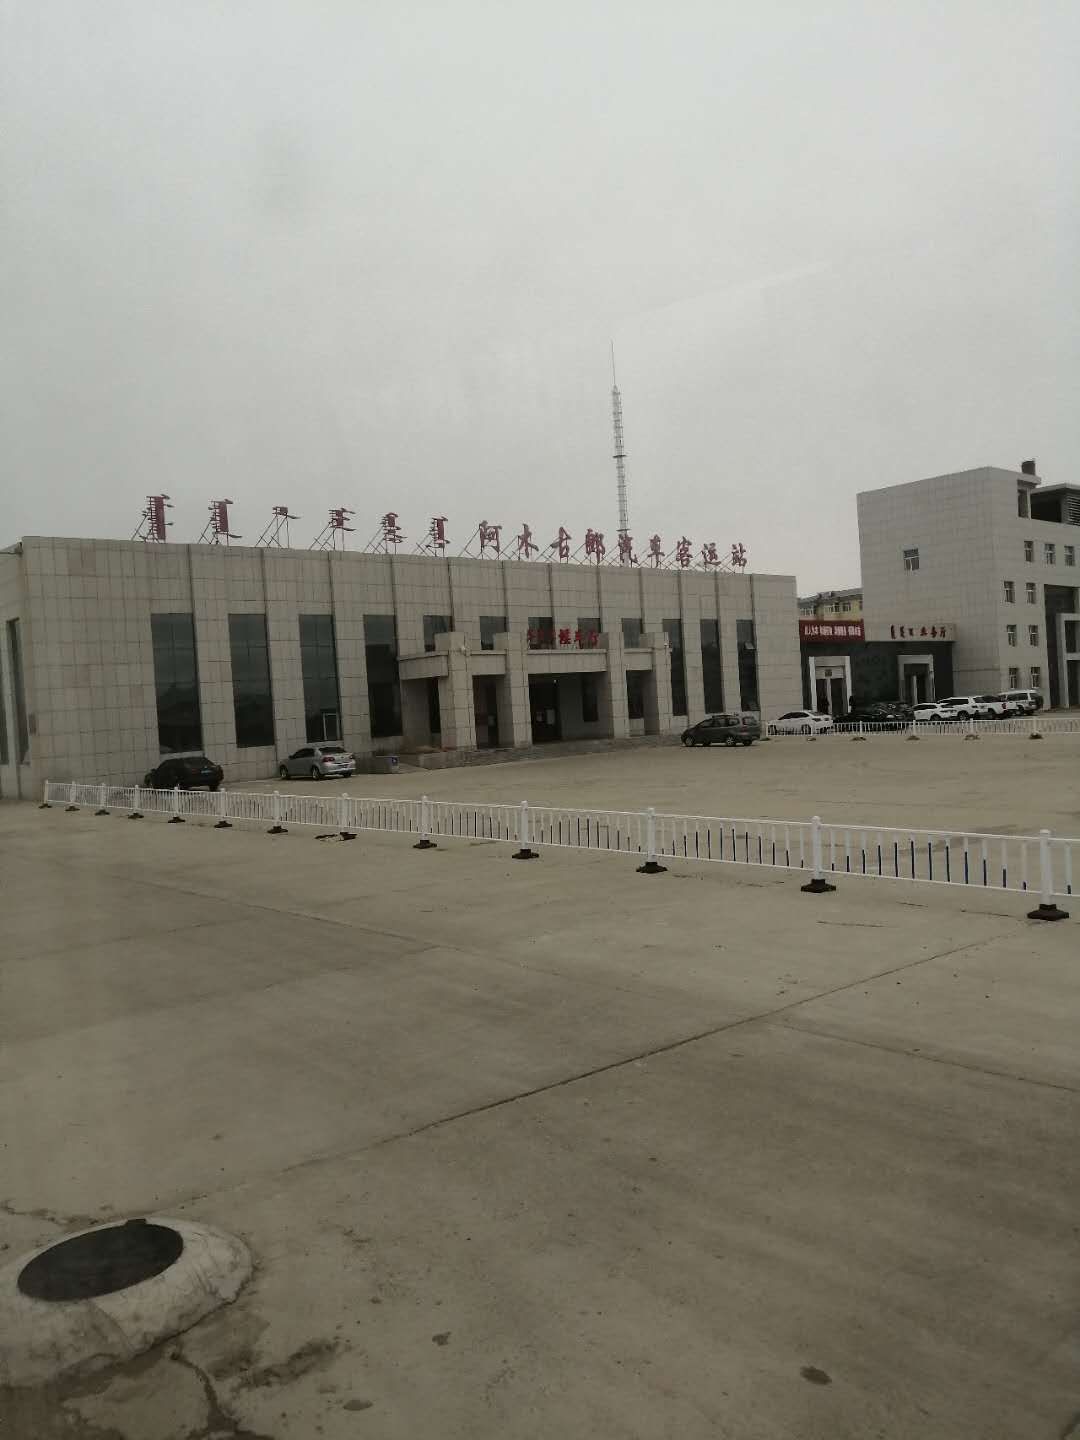 内蒙古自治区呼伦贝尔市新巴尔虎左旗交通运输局北(呼格吉勒街北)